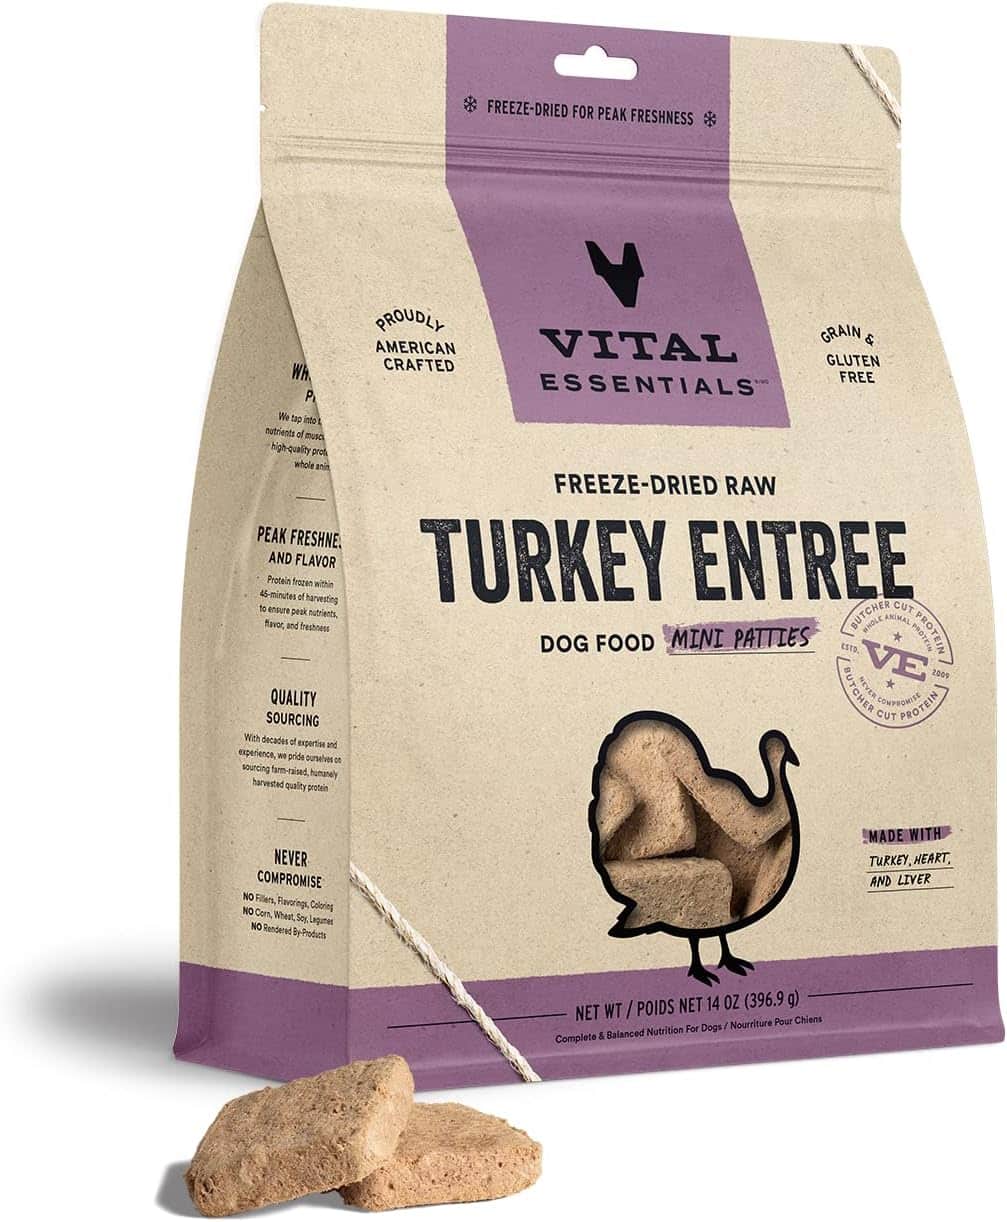 vital essentials turkey recipe freeze-dried dog food patties